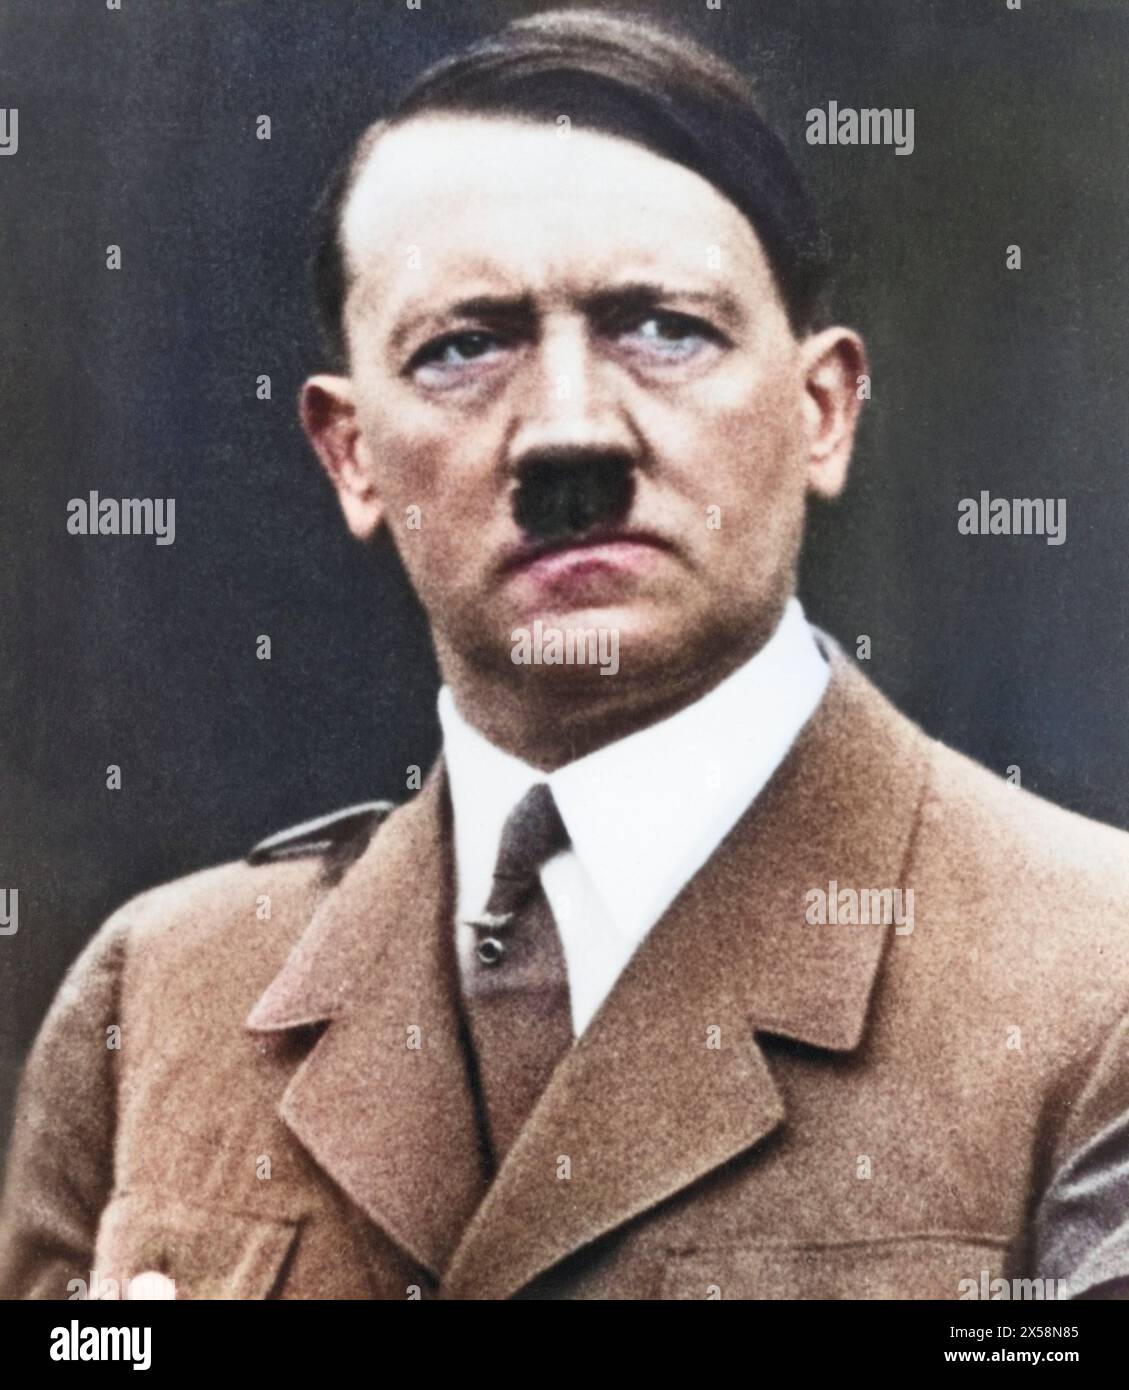 Hitler, Adolf, 20.4.1889 - 30.4,1945, deutscher Politiker (NSDAP), Reichskanzler 30.1.1933 - 30.4,1945, Porträt, 1930er Jahre, NUR REDAKTIONELLE VERWENDUNG Stockfoto